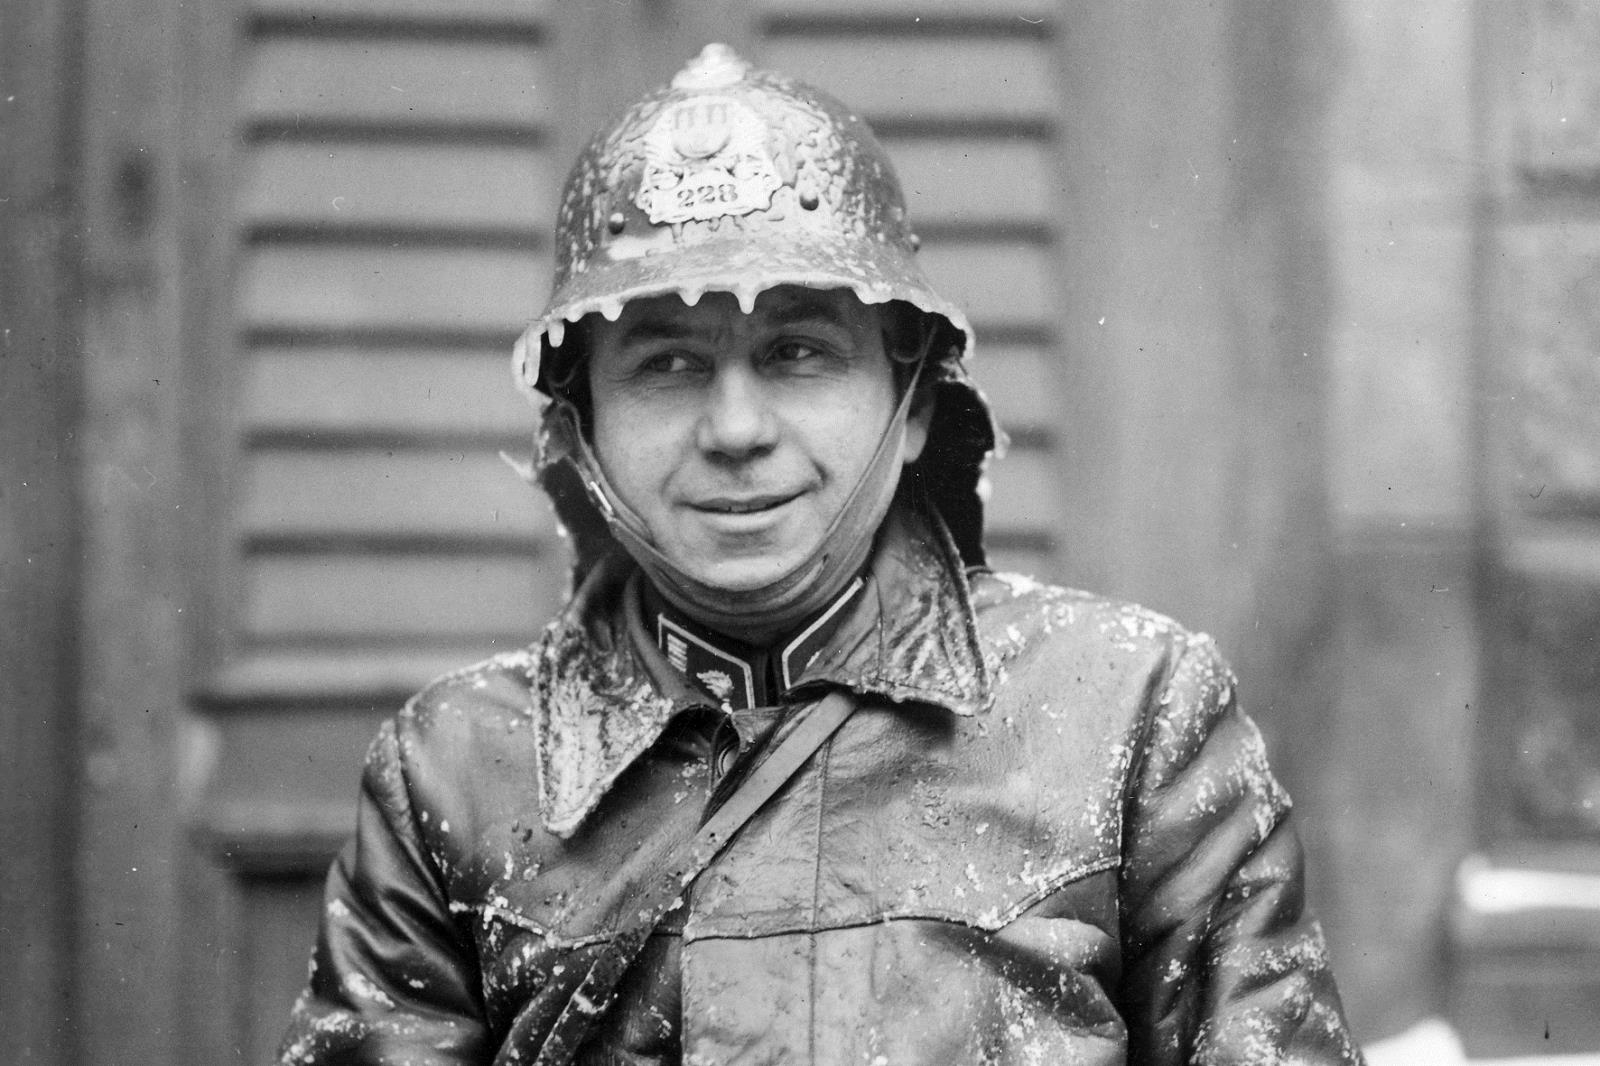 1940_03_001 praßskž hasiü po üinnosti v mrazivam poüas° roku 1940.jpg